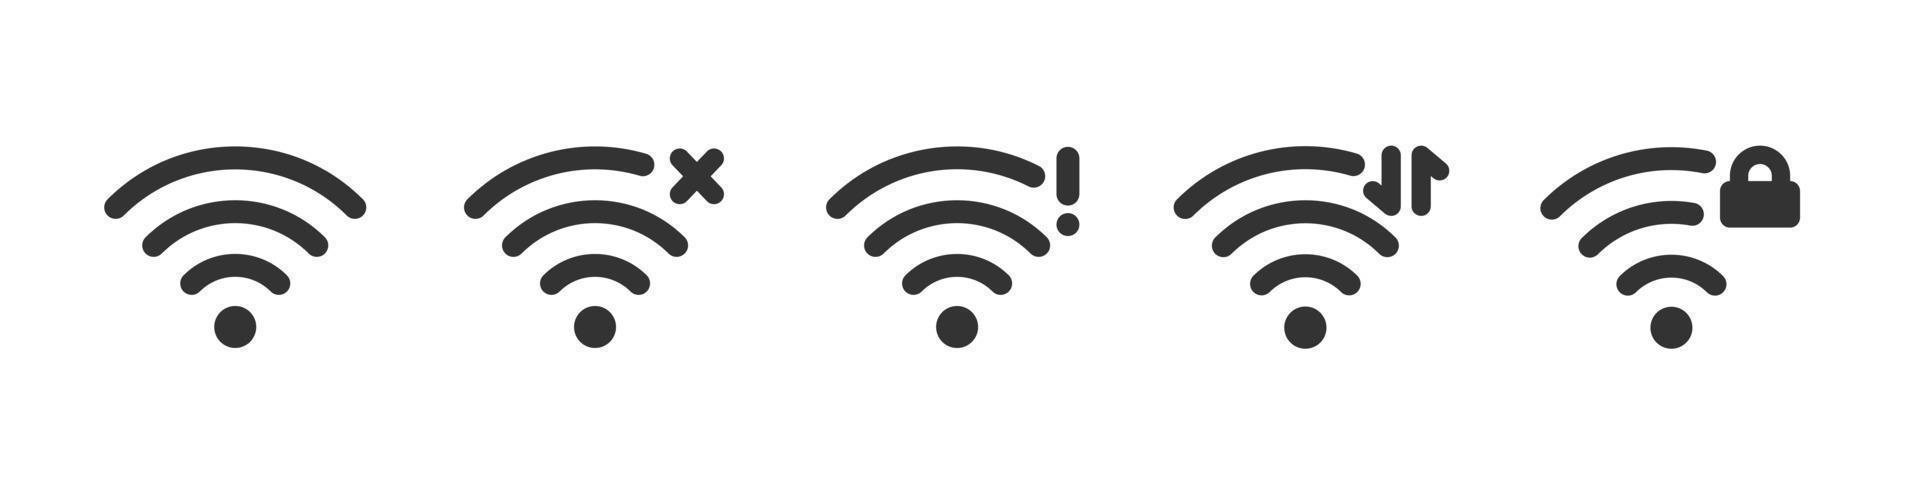 conjunto de ícones wi fi - bloqueado, transmissão de dados, erro de rede. ícones de status do sinal wifi. sinal de conexão de internet sem fio. ilustração vetorial isolada no fundo branco vetor